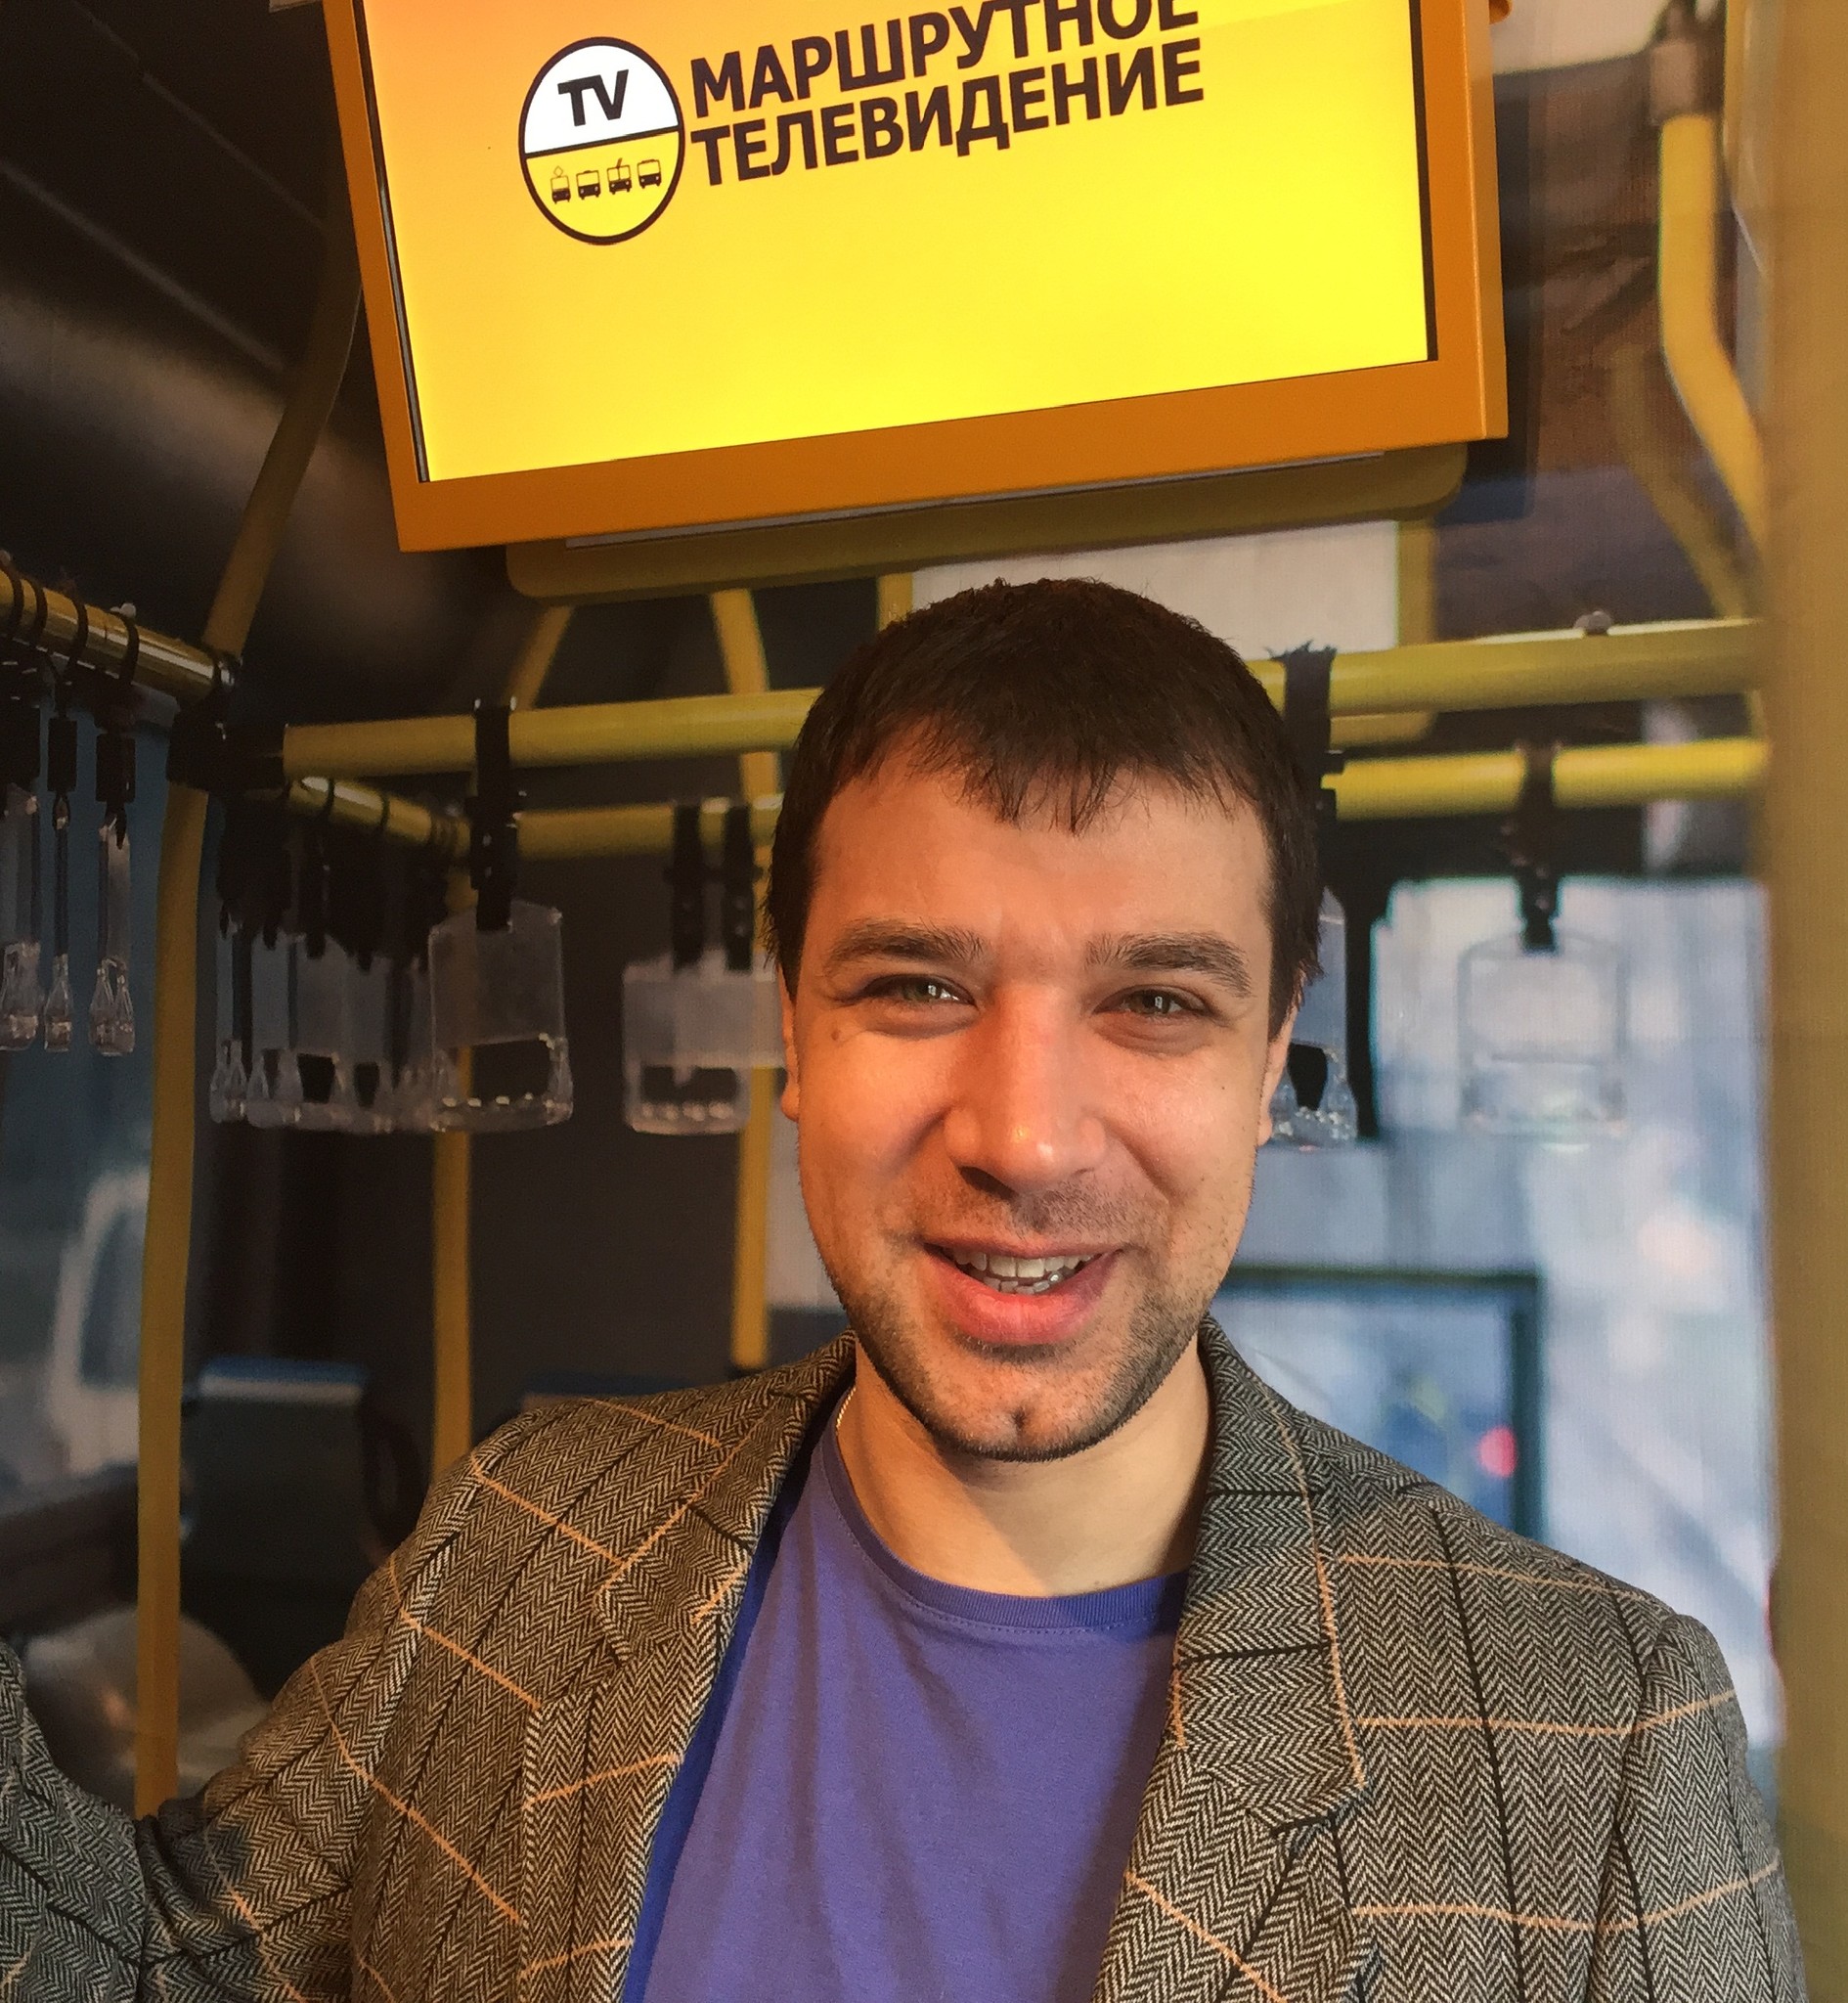 Алексей Ставров, директор по развитию компании «Первое Маршрутное Телевидение»